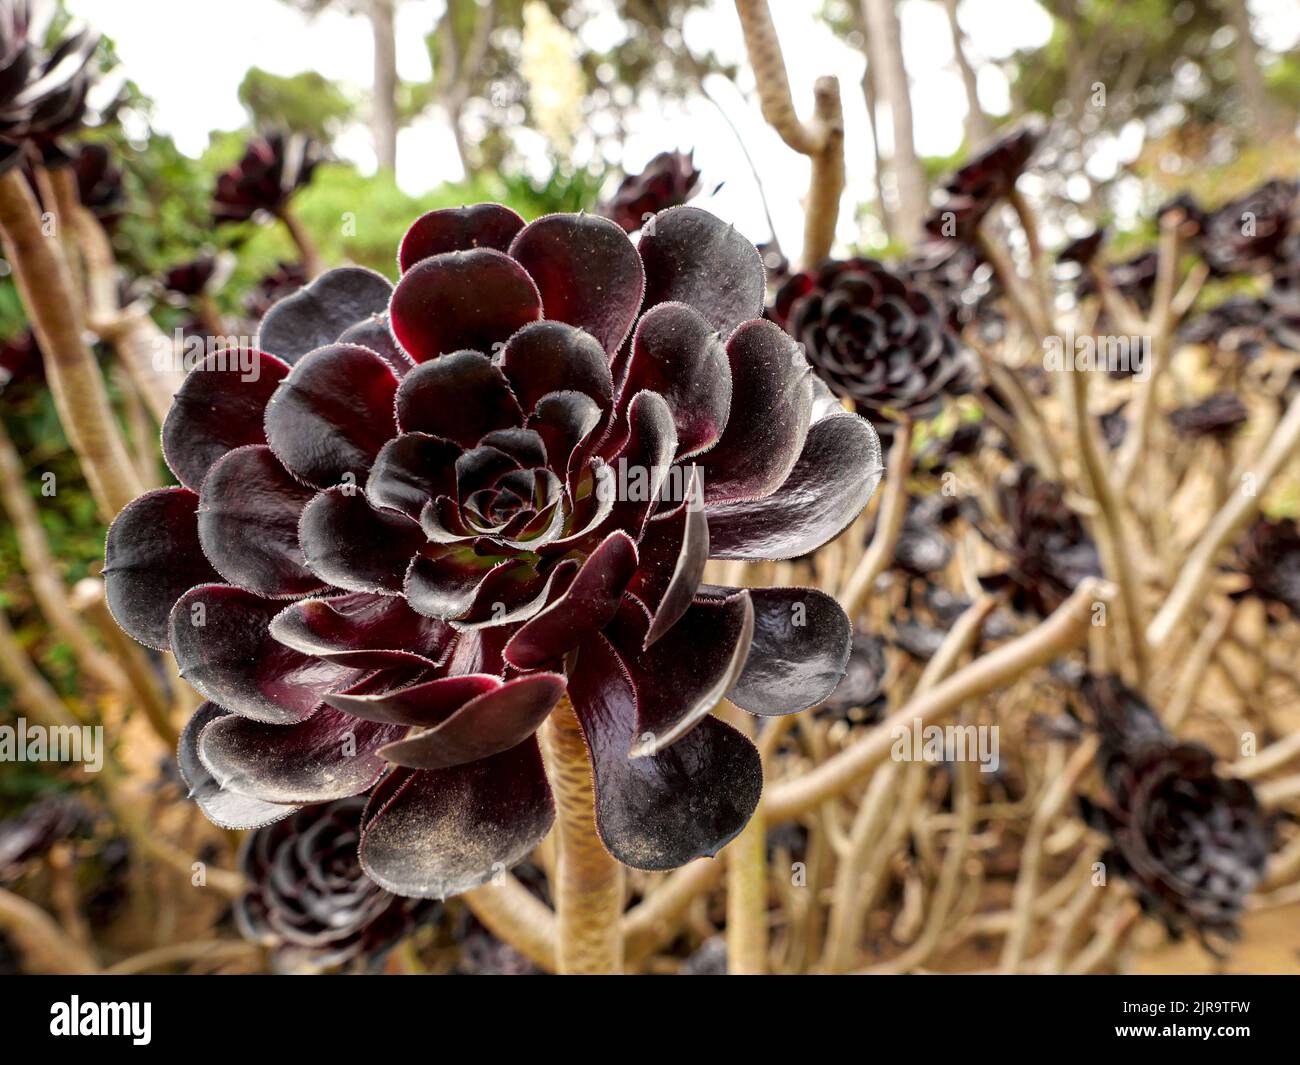 Aeonium Arboreum schwarzkopf, succulent plant, burgundy-black rosettes of leaves Stock Photo